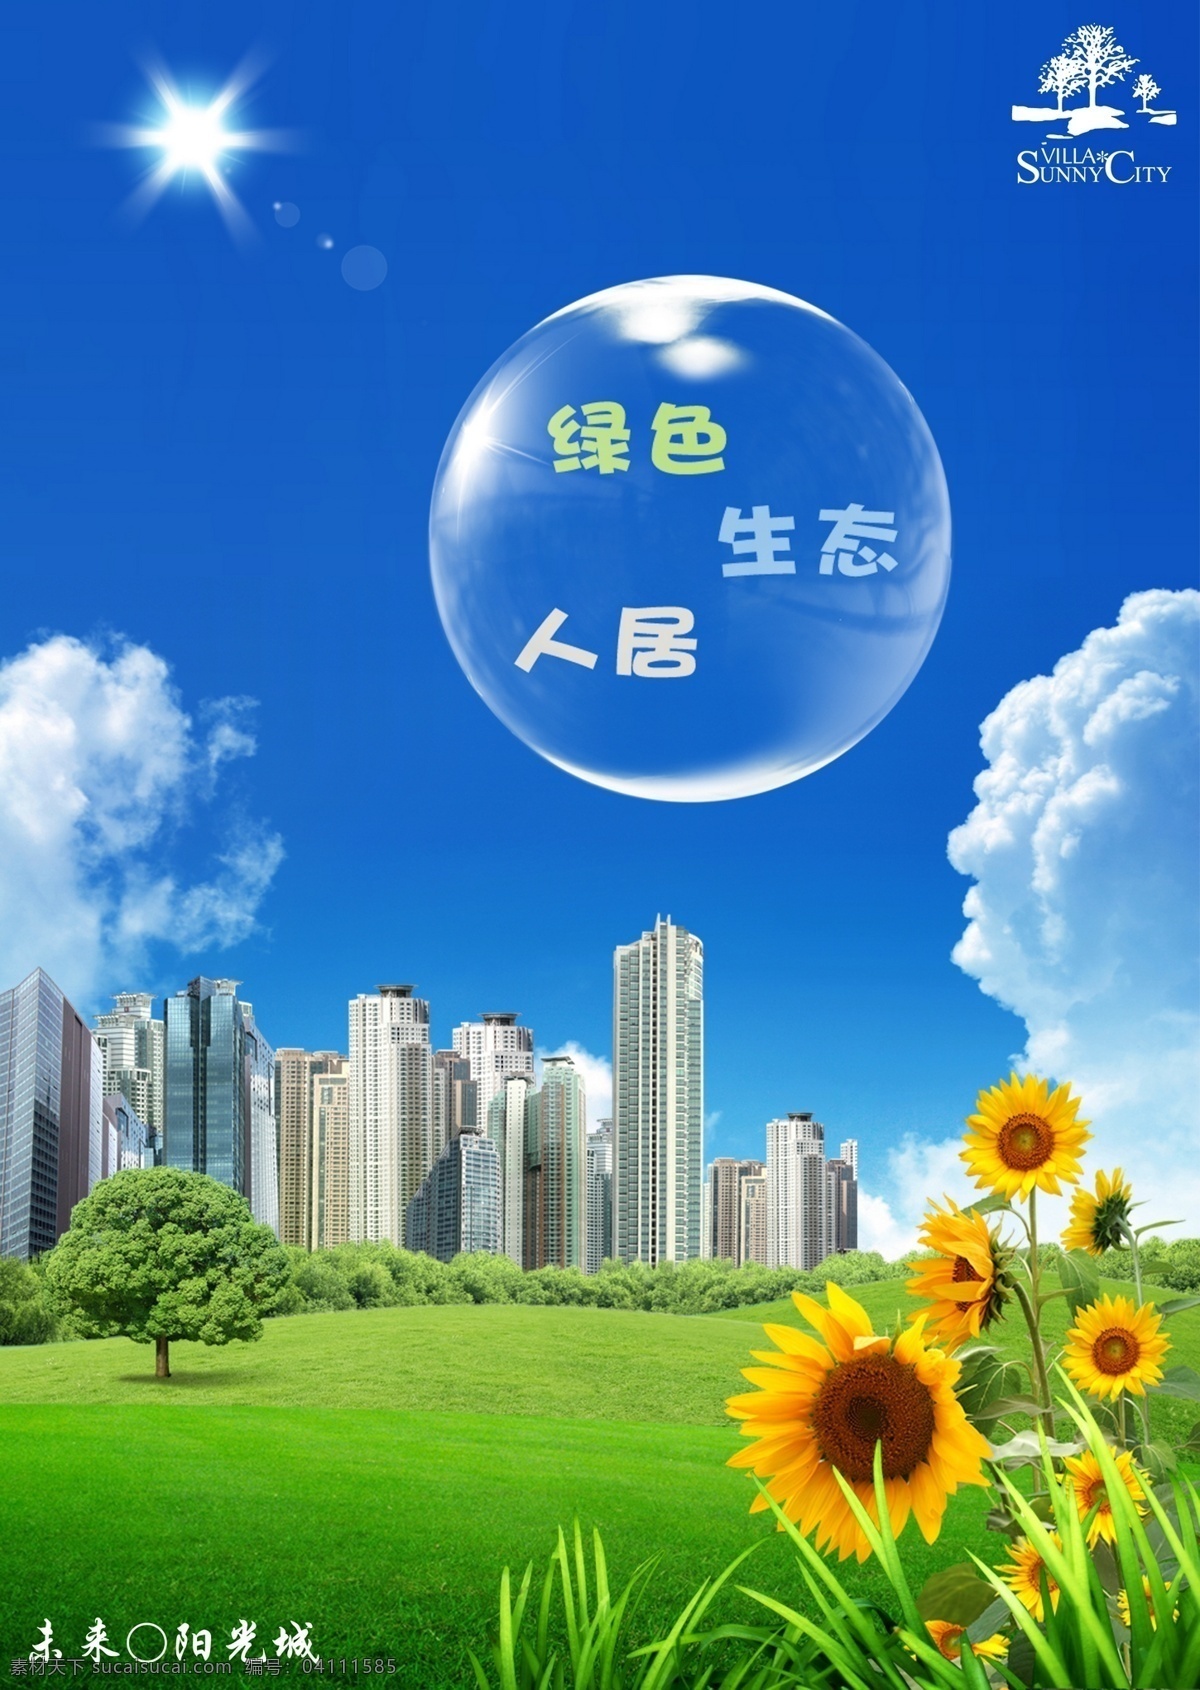 绿色生活 绿色 生态 景观 未来 城区 草房 城市 建筑 向日葵 蓝天 白云